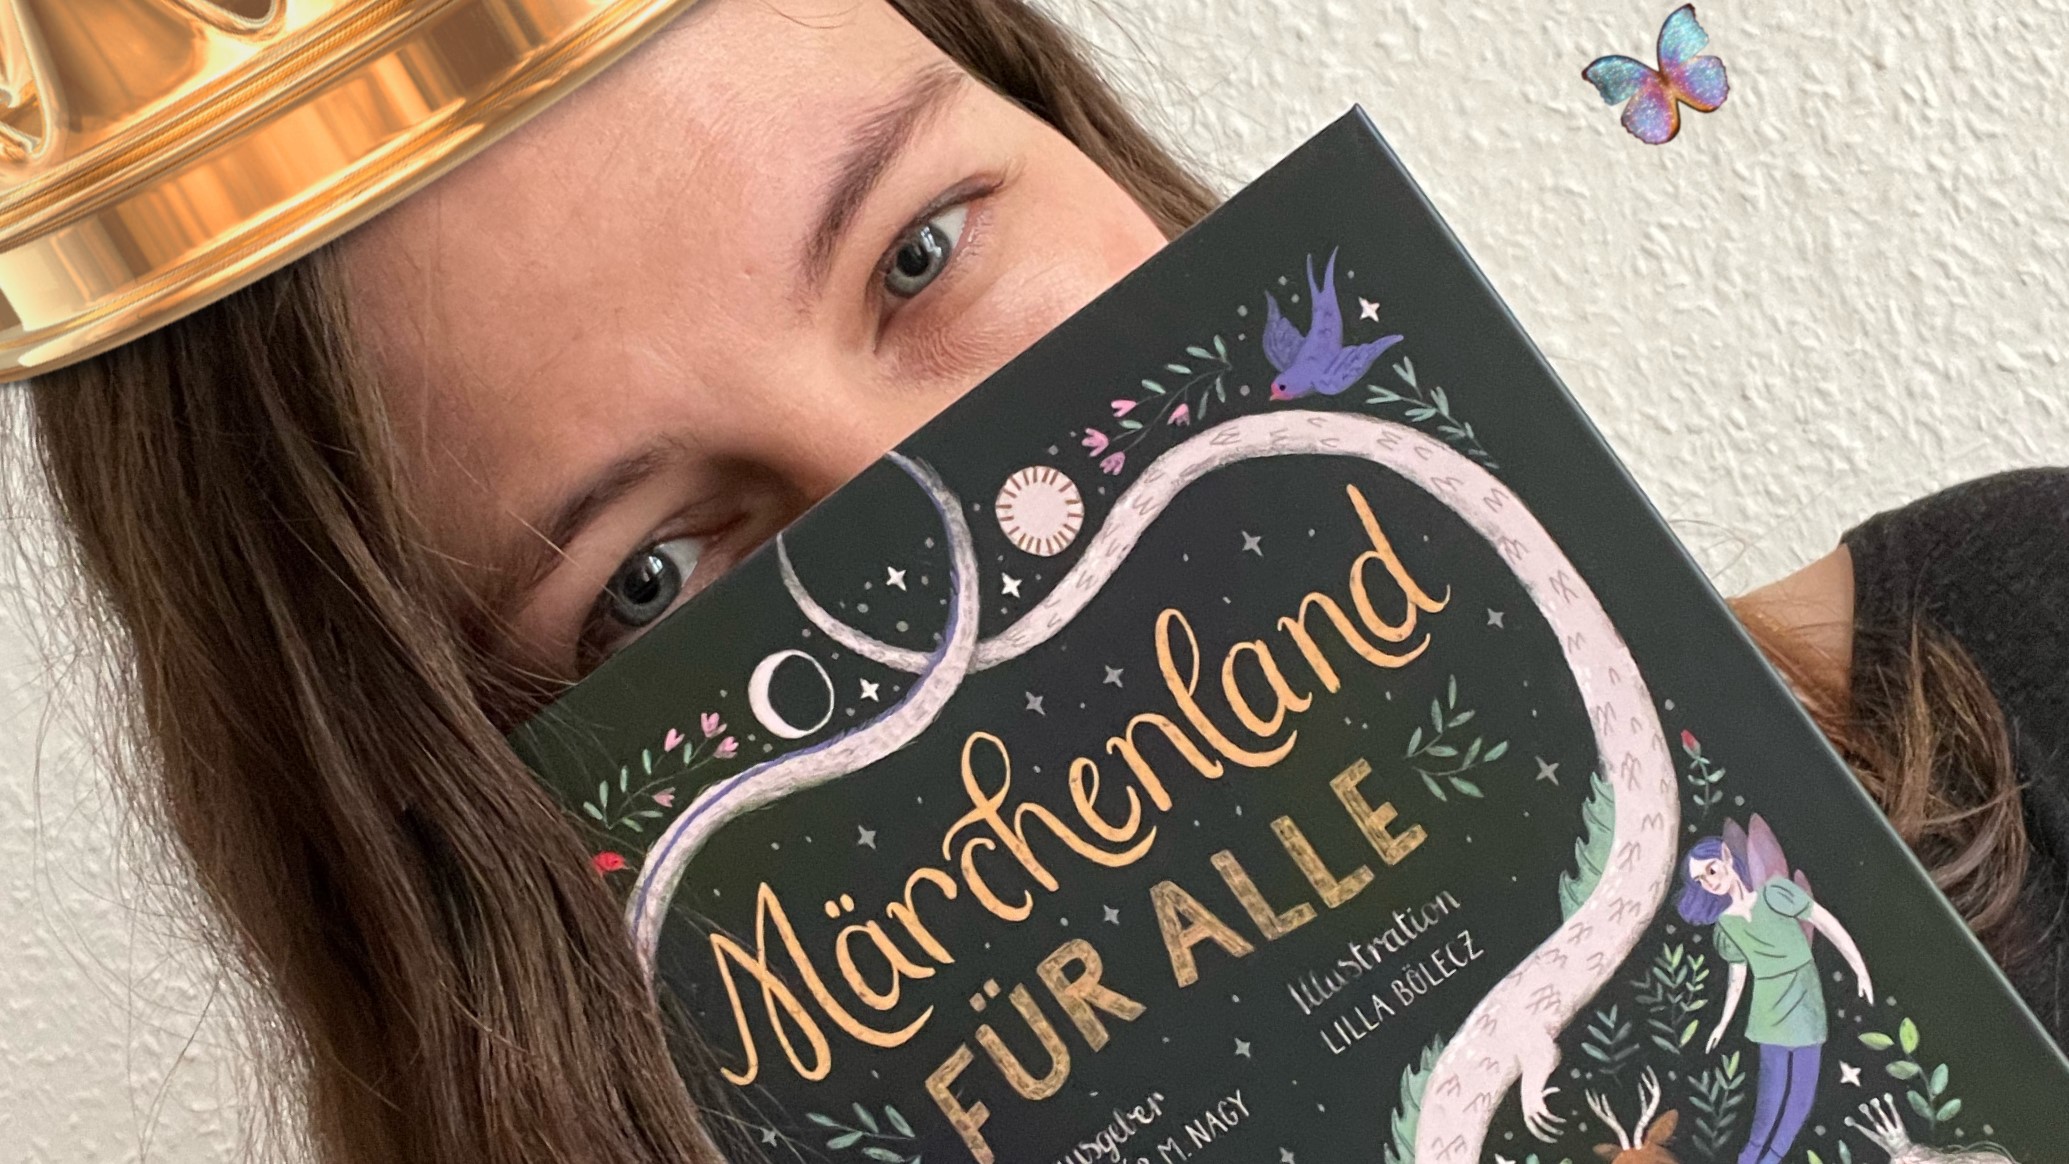 Theresa Doff hält das Buch "Märchenland für Alle".